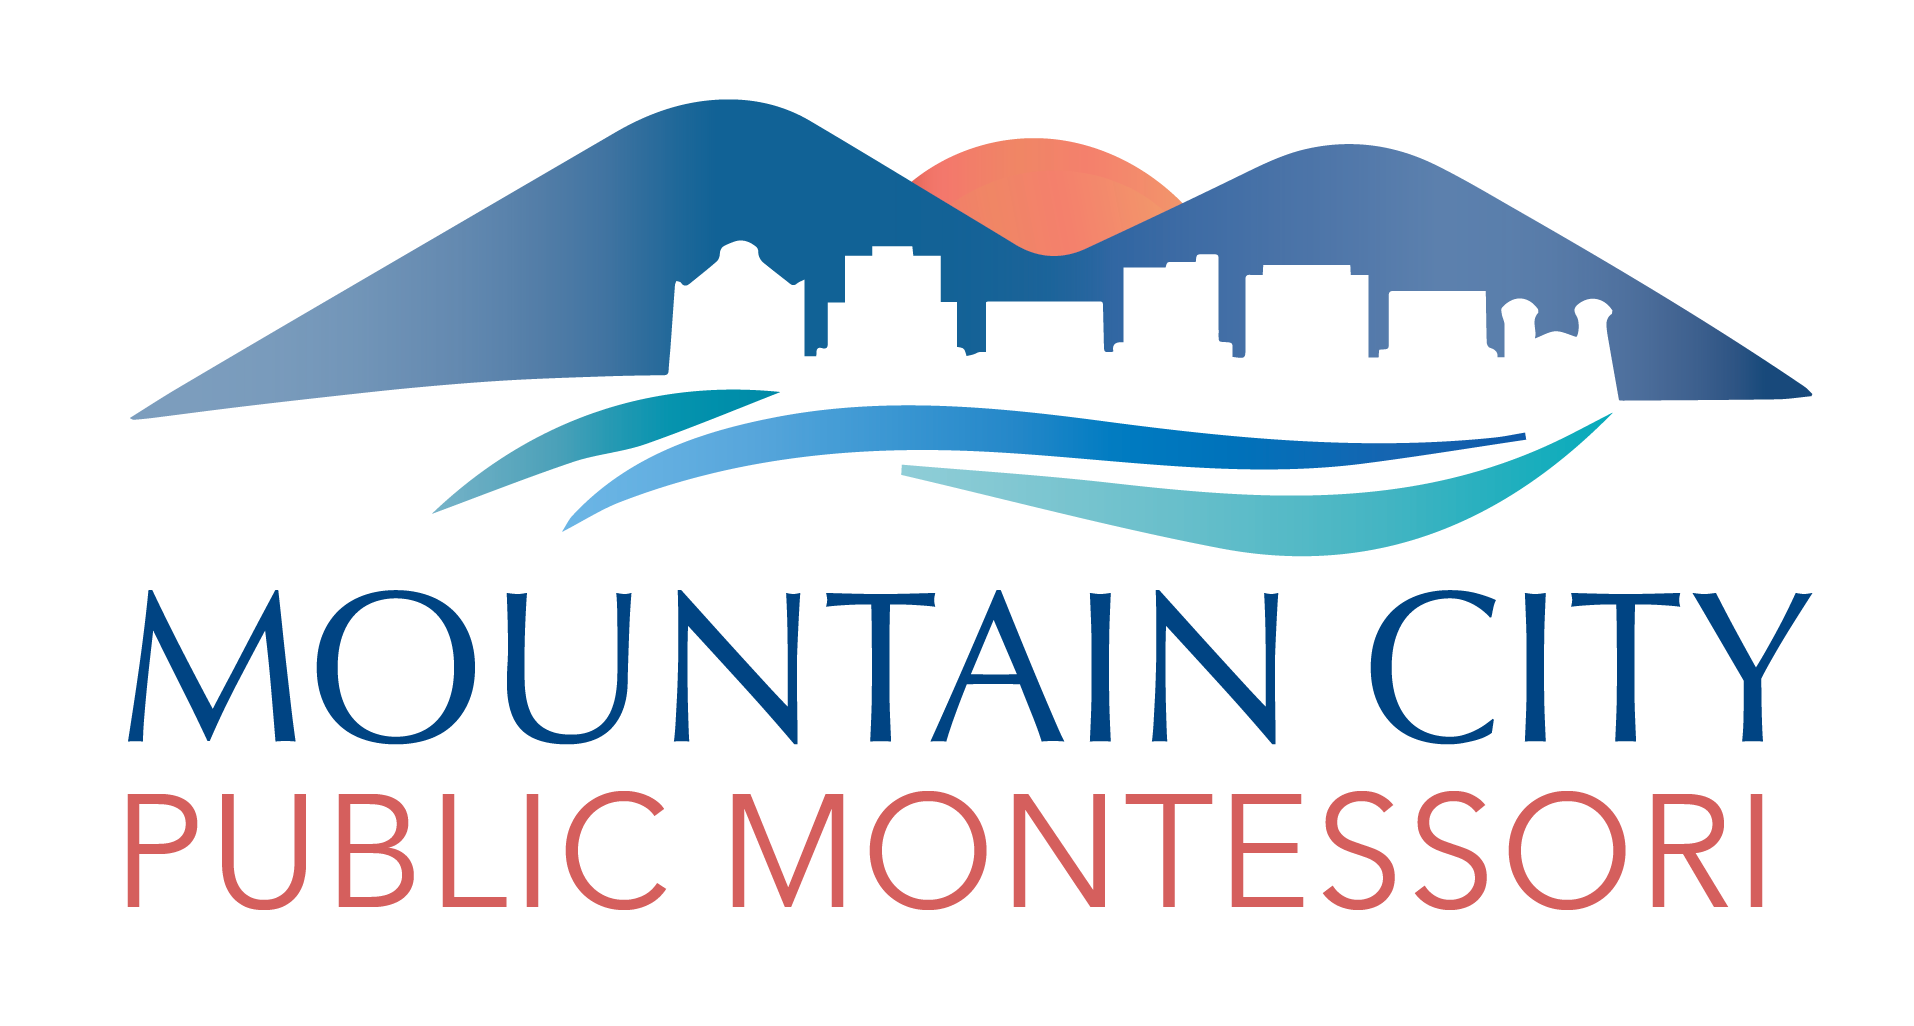 Mountain City Public Montessori